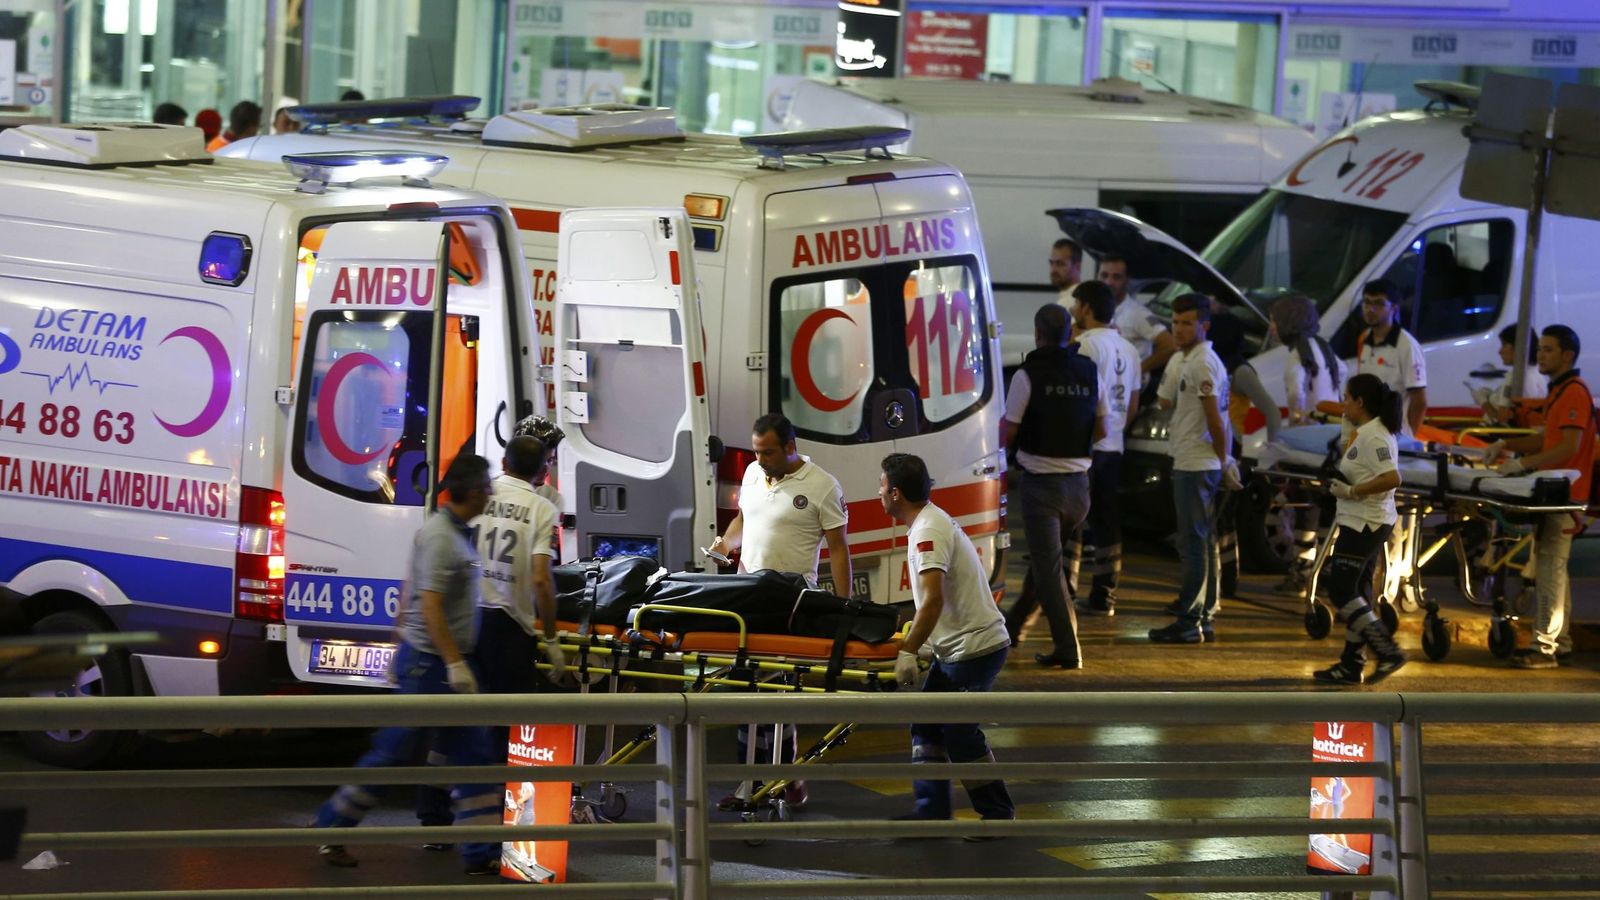 Foto: Varios ambulancias atienden a los heridos tras el atentado en el aeropuerto de Estambul. (Reuters)